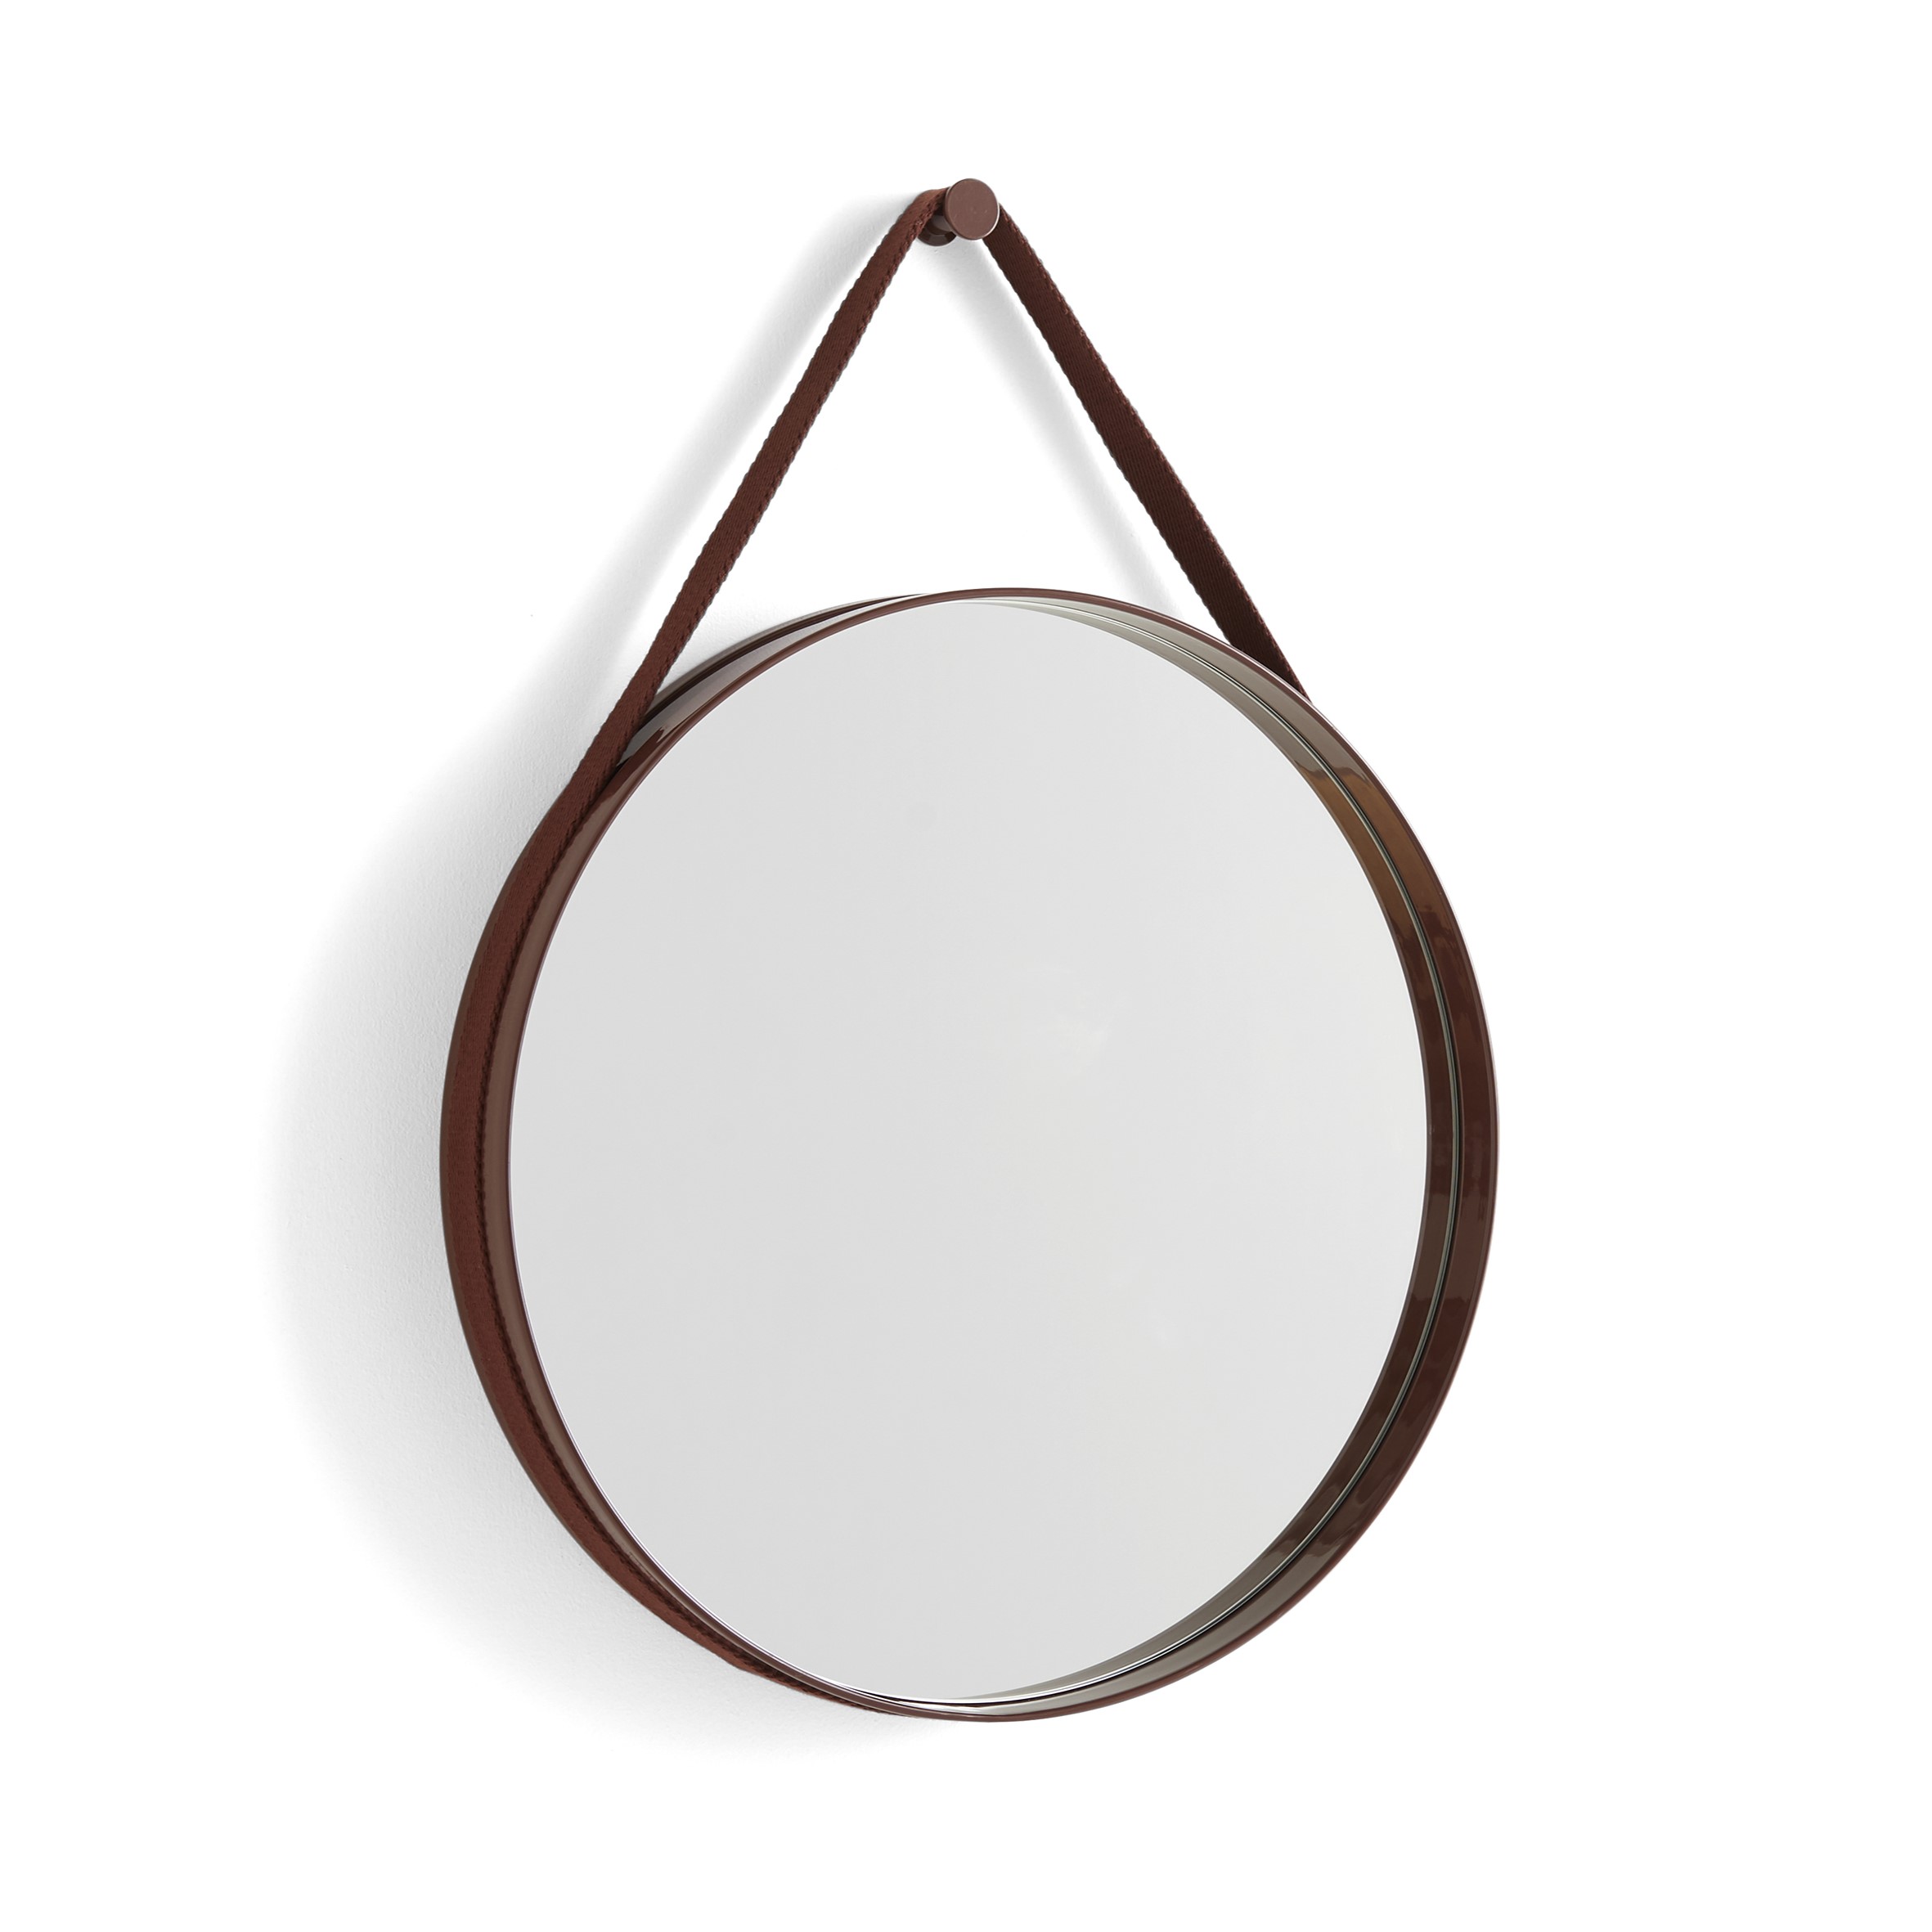 Strap mirror 50 cm - Dark Brown